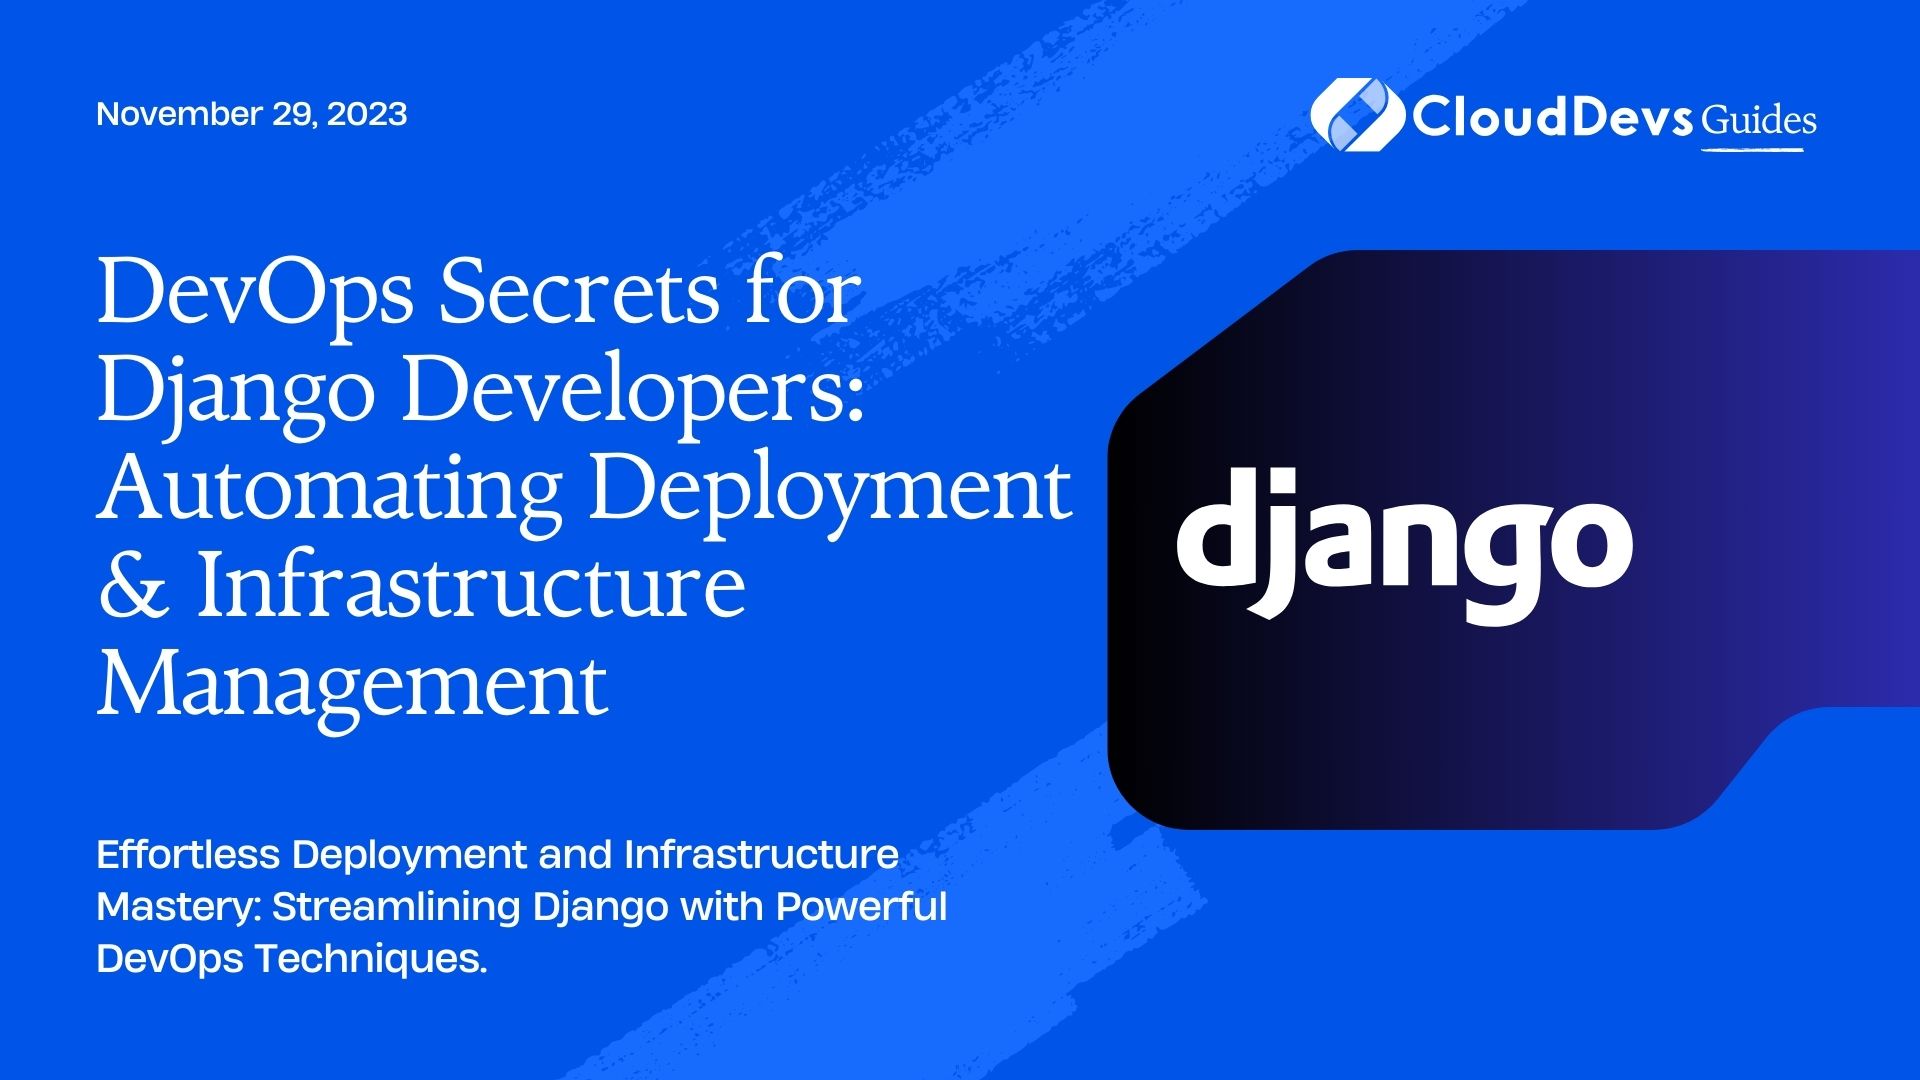 DevOps Secrets for Django Developers: Automating Deployment & Infrastructure Management